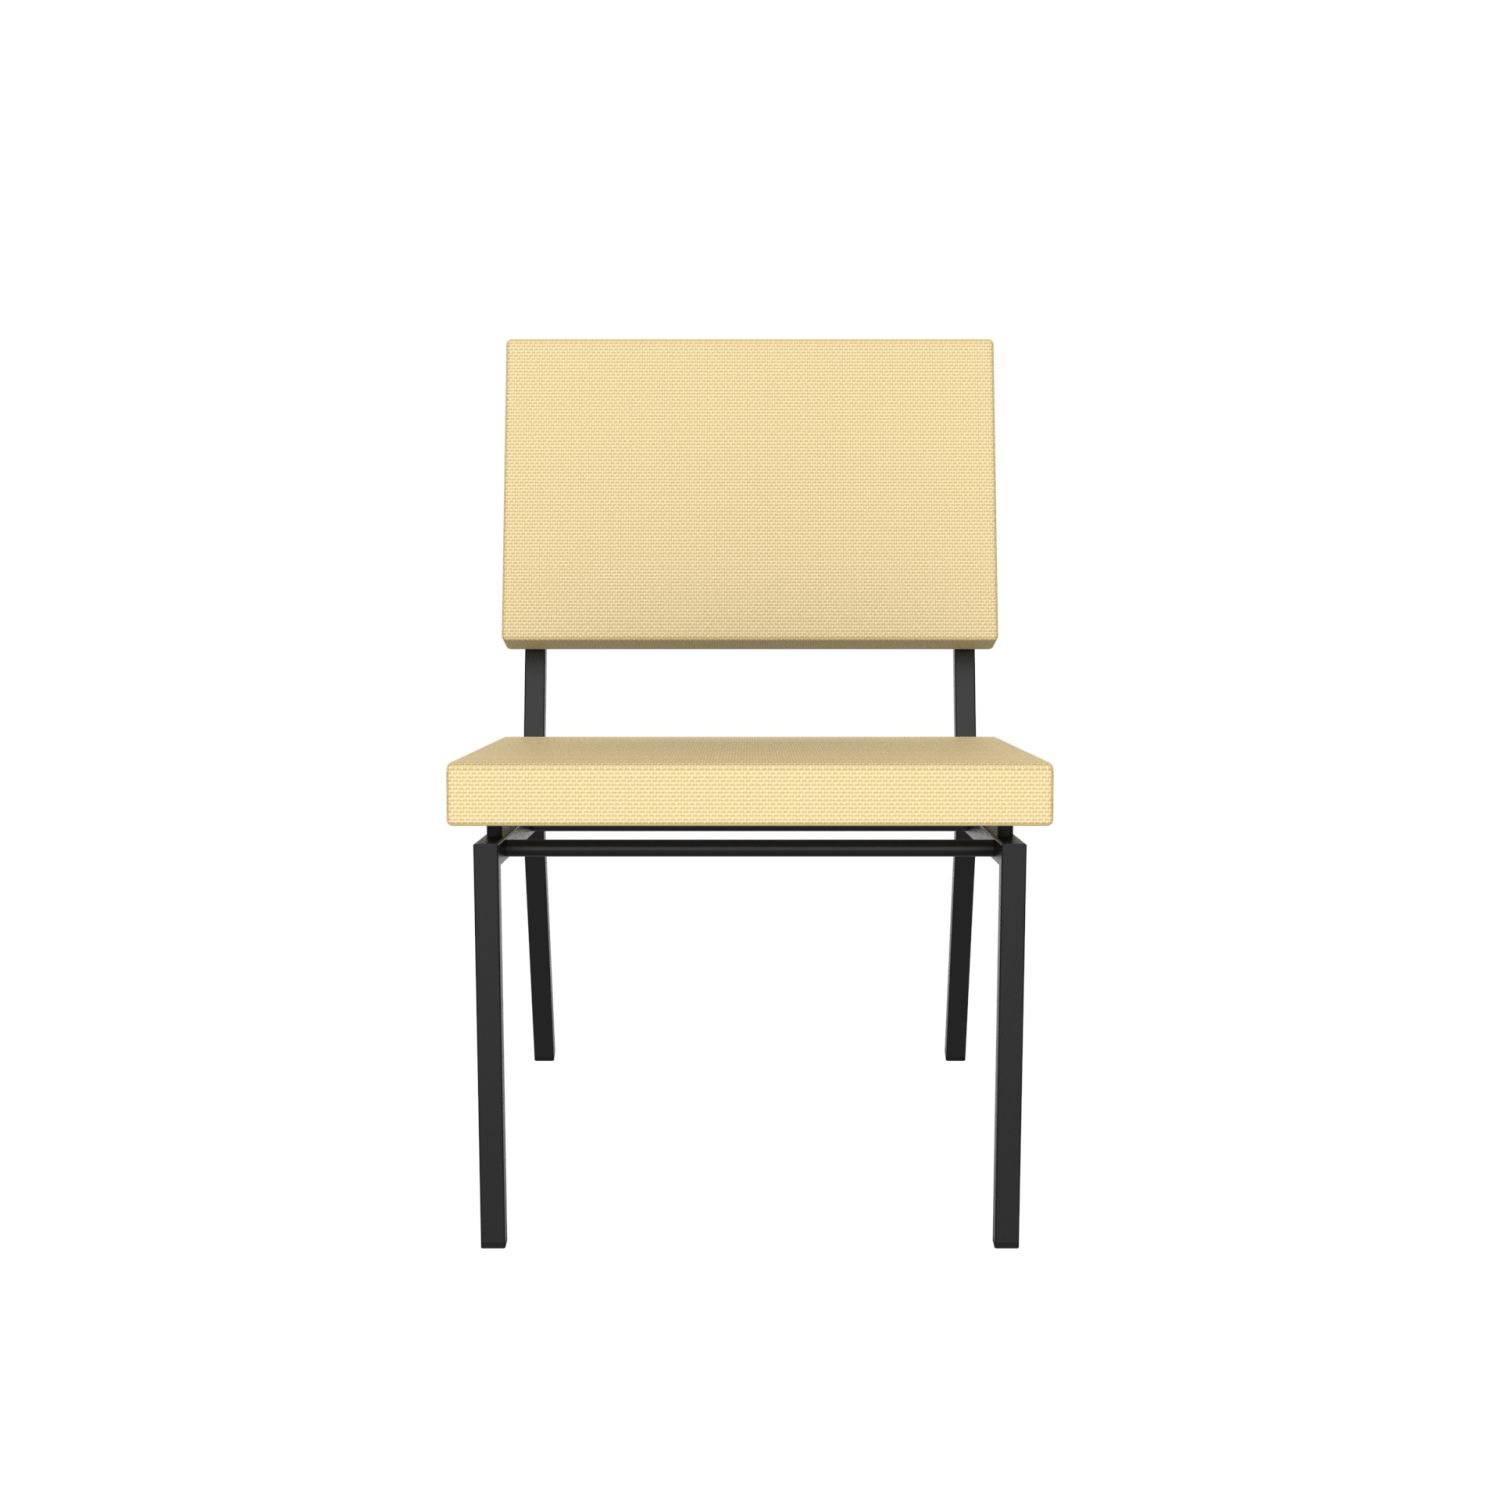 lensvelt gerrit veenendaal low chair without armrests light brown 141 price level 1 black frame ral9005 hard leg ends